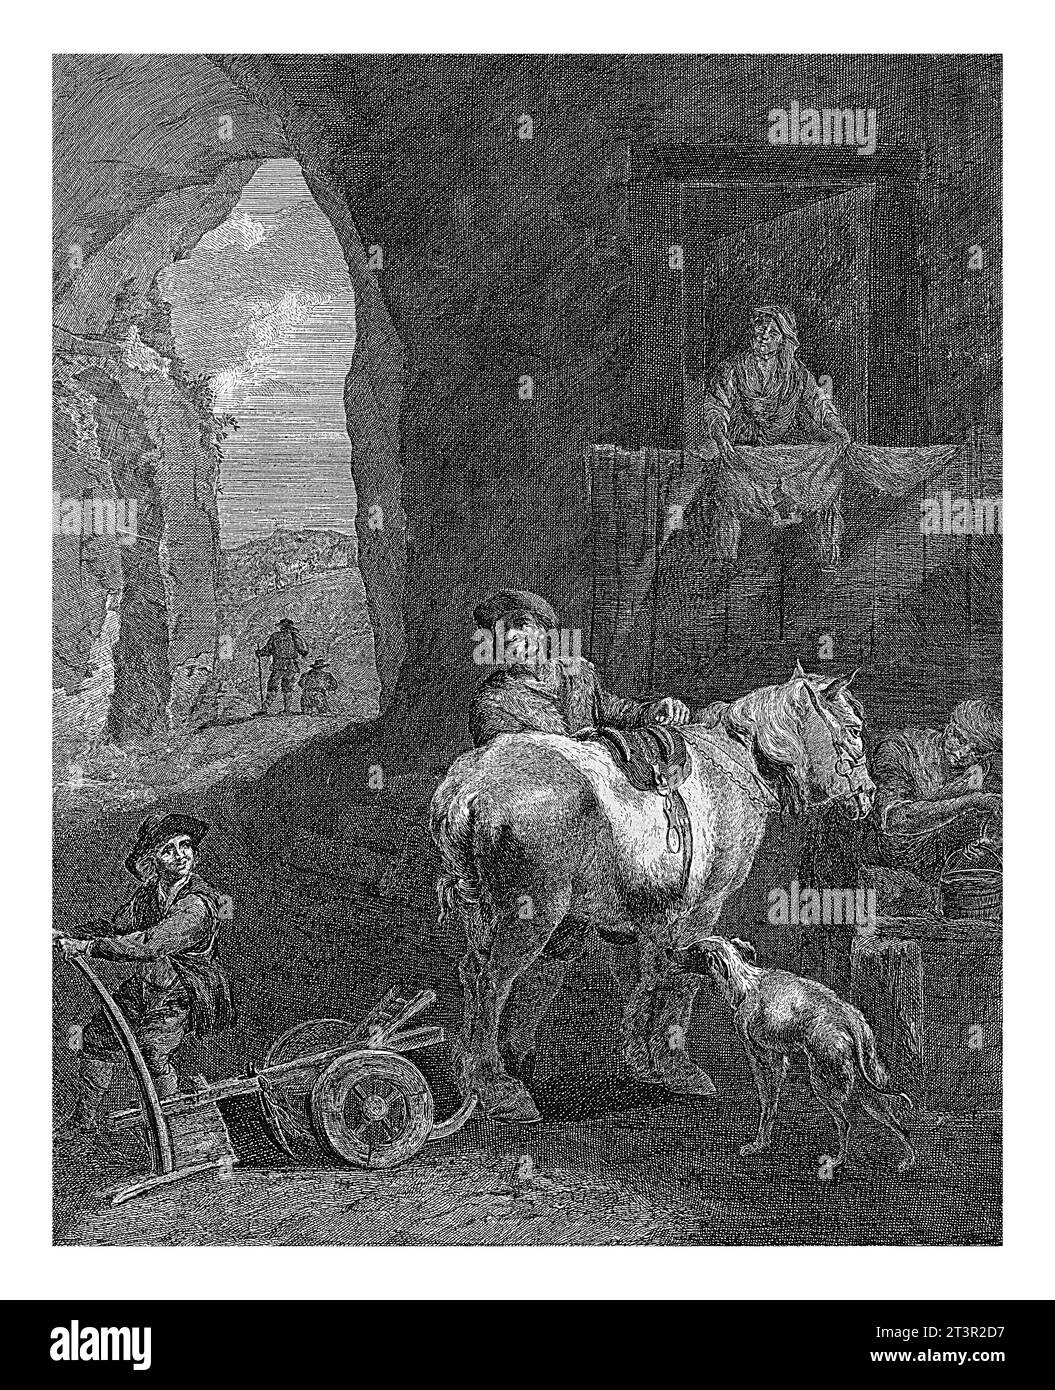 Fermière avec cheval dans une maison-grotte, Elisabeth Marie Simons, d'après Nicolaes Pietersz. Berchem, 1760 - 1834 Banque D'Images